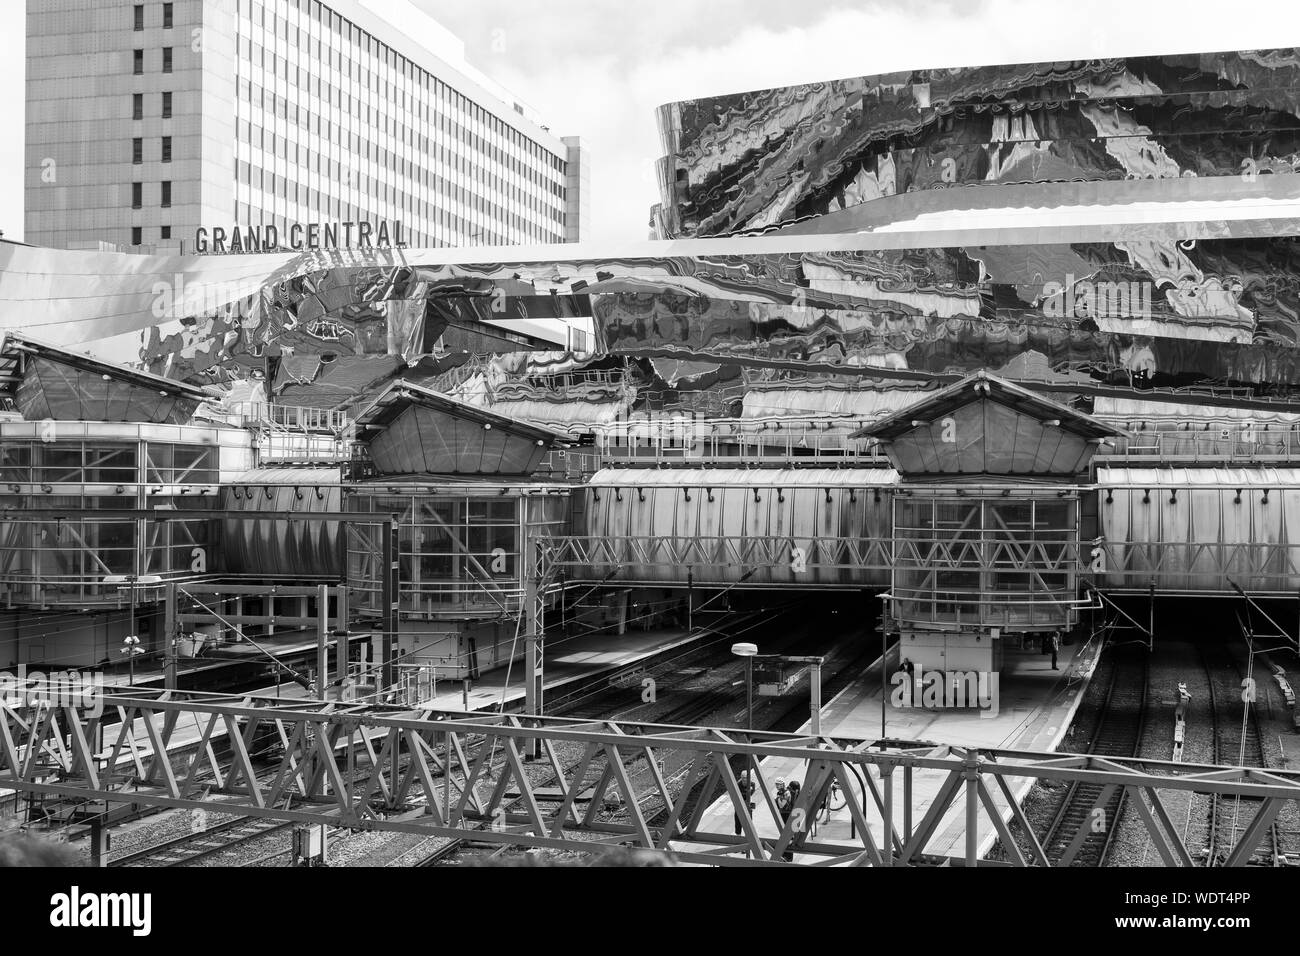 Il moderno acciaio inossidabile facciata del Grand Central Shopping Centre in Birmingham contrasta con gli anni sessanta Birmingham New Street Station di seguito Foto Stock